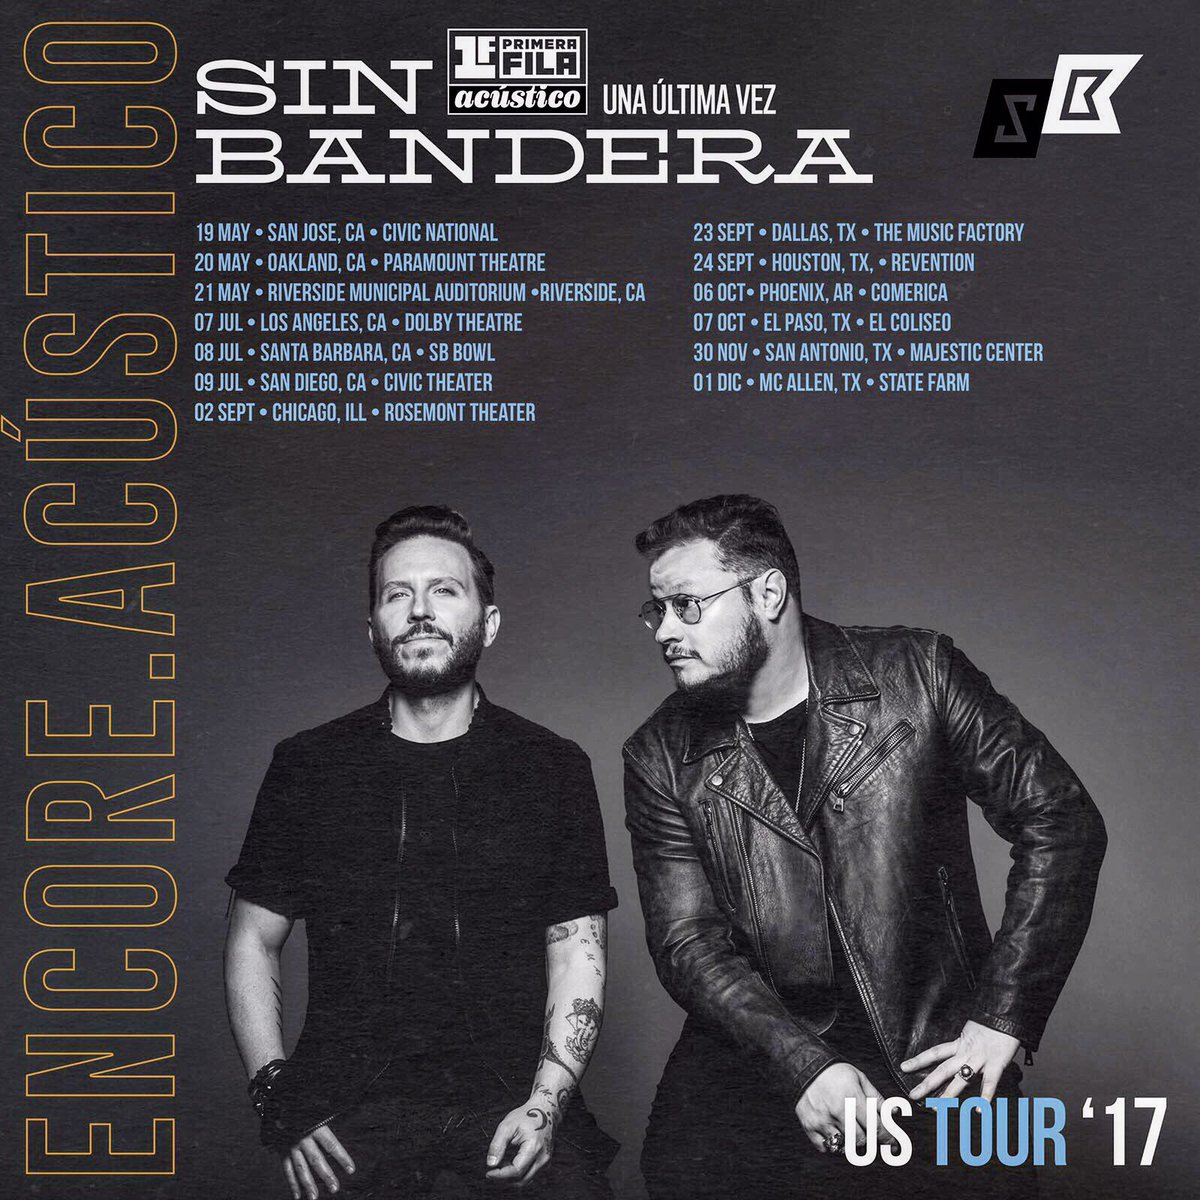 Concierto de Sin Bandera, Una Última Vez Tour, en Phoenix, AR, Estados Unidos, Viernes, 06 de octubre de 2017